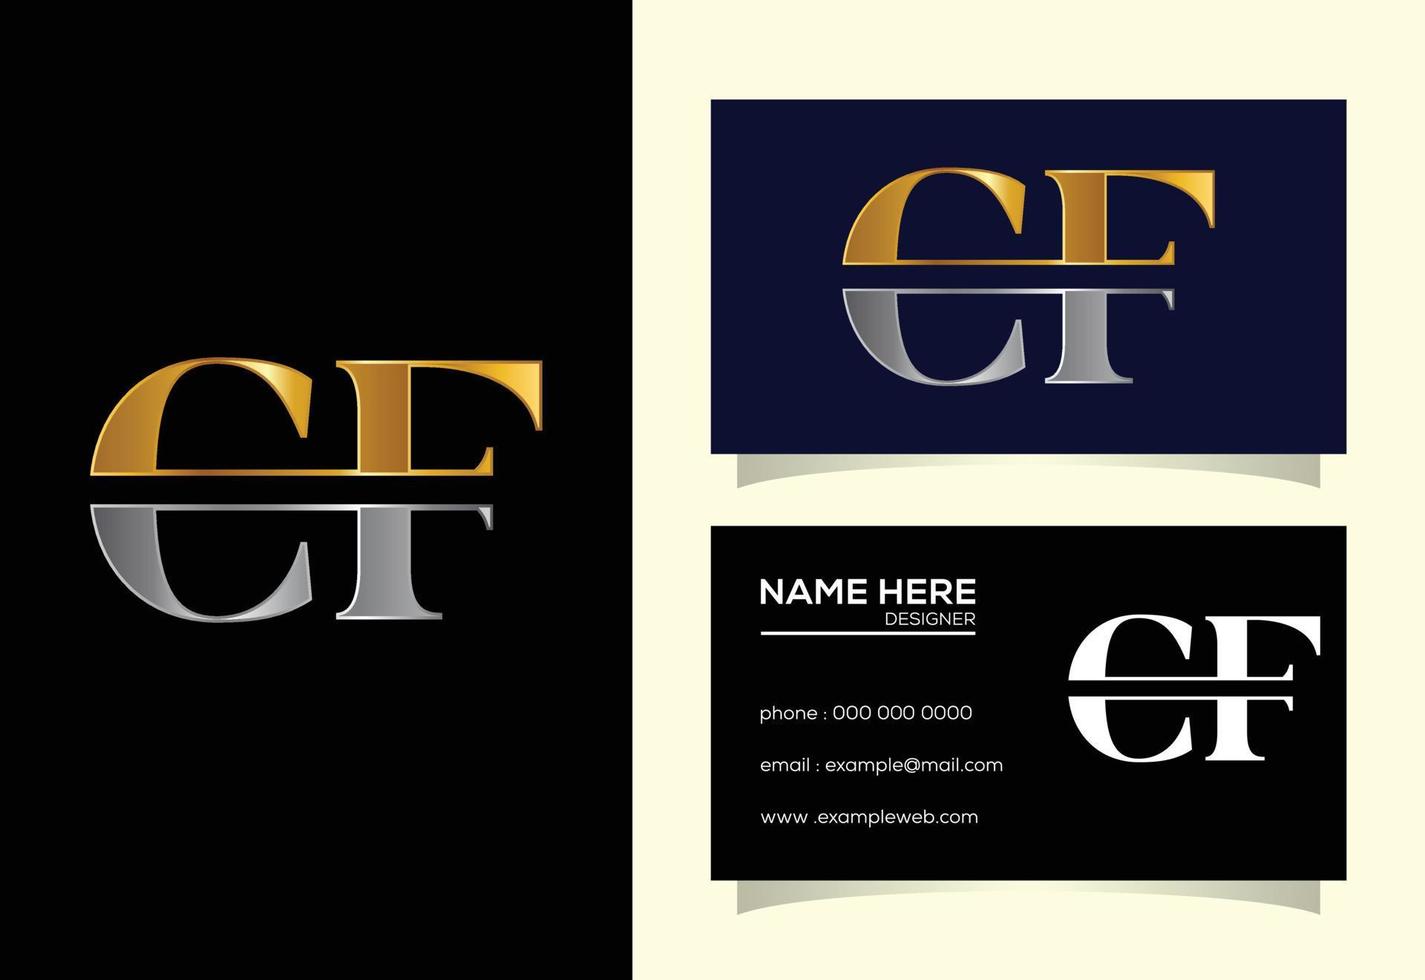 diseño inicial del logotipo de la letra del monograma cf. símbolo del alfabeto gráfico para la identidad empresarial corporativa vector